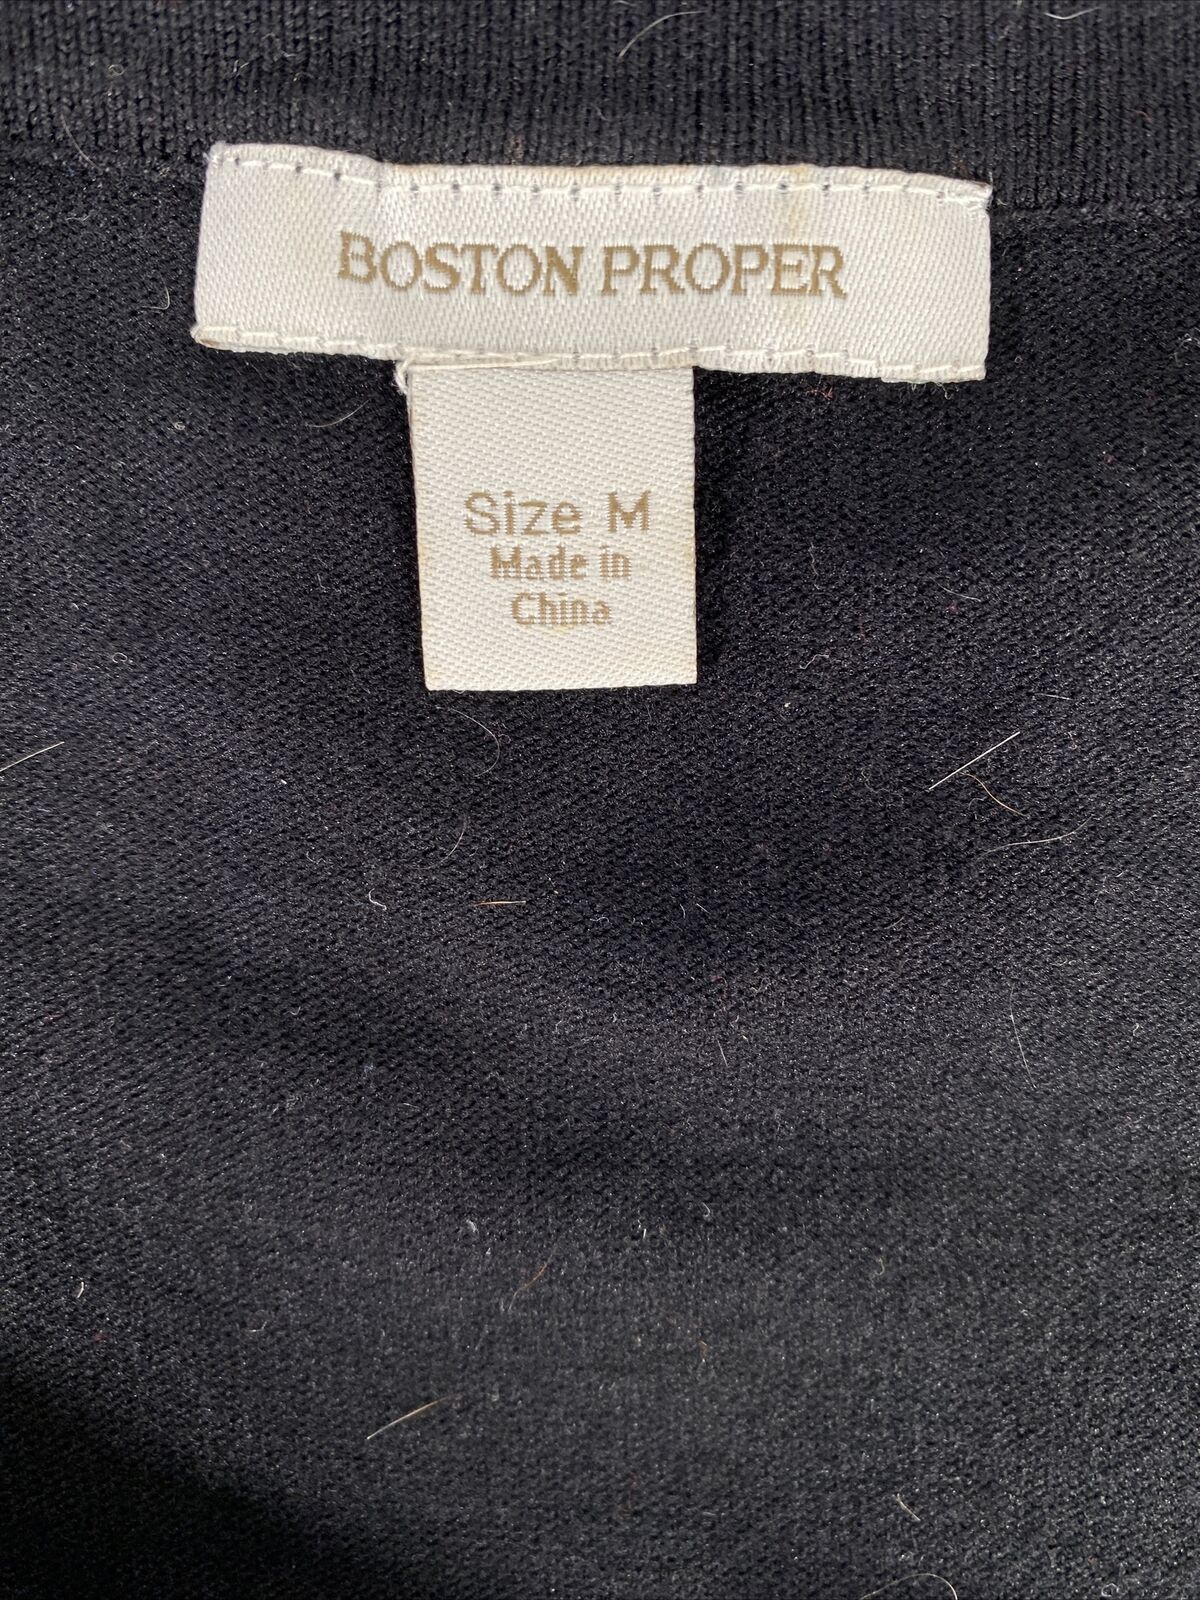 Boston Proper Blusa de manga 1/2 con lentejuelas en negro y plateado para mujer, talla M